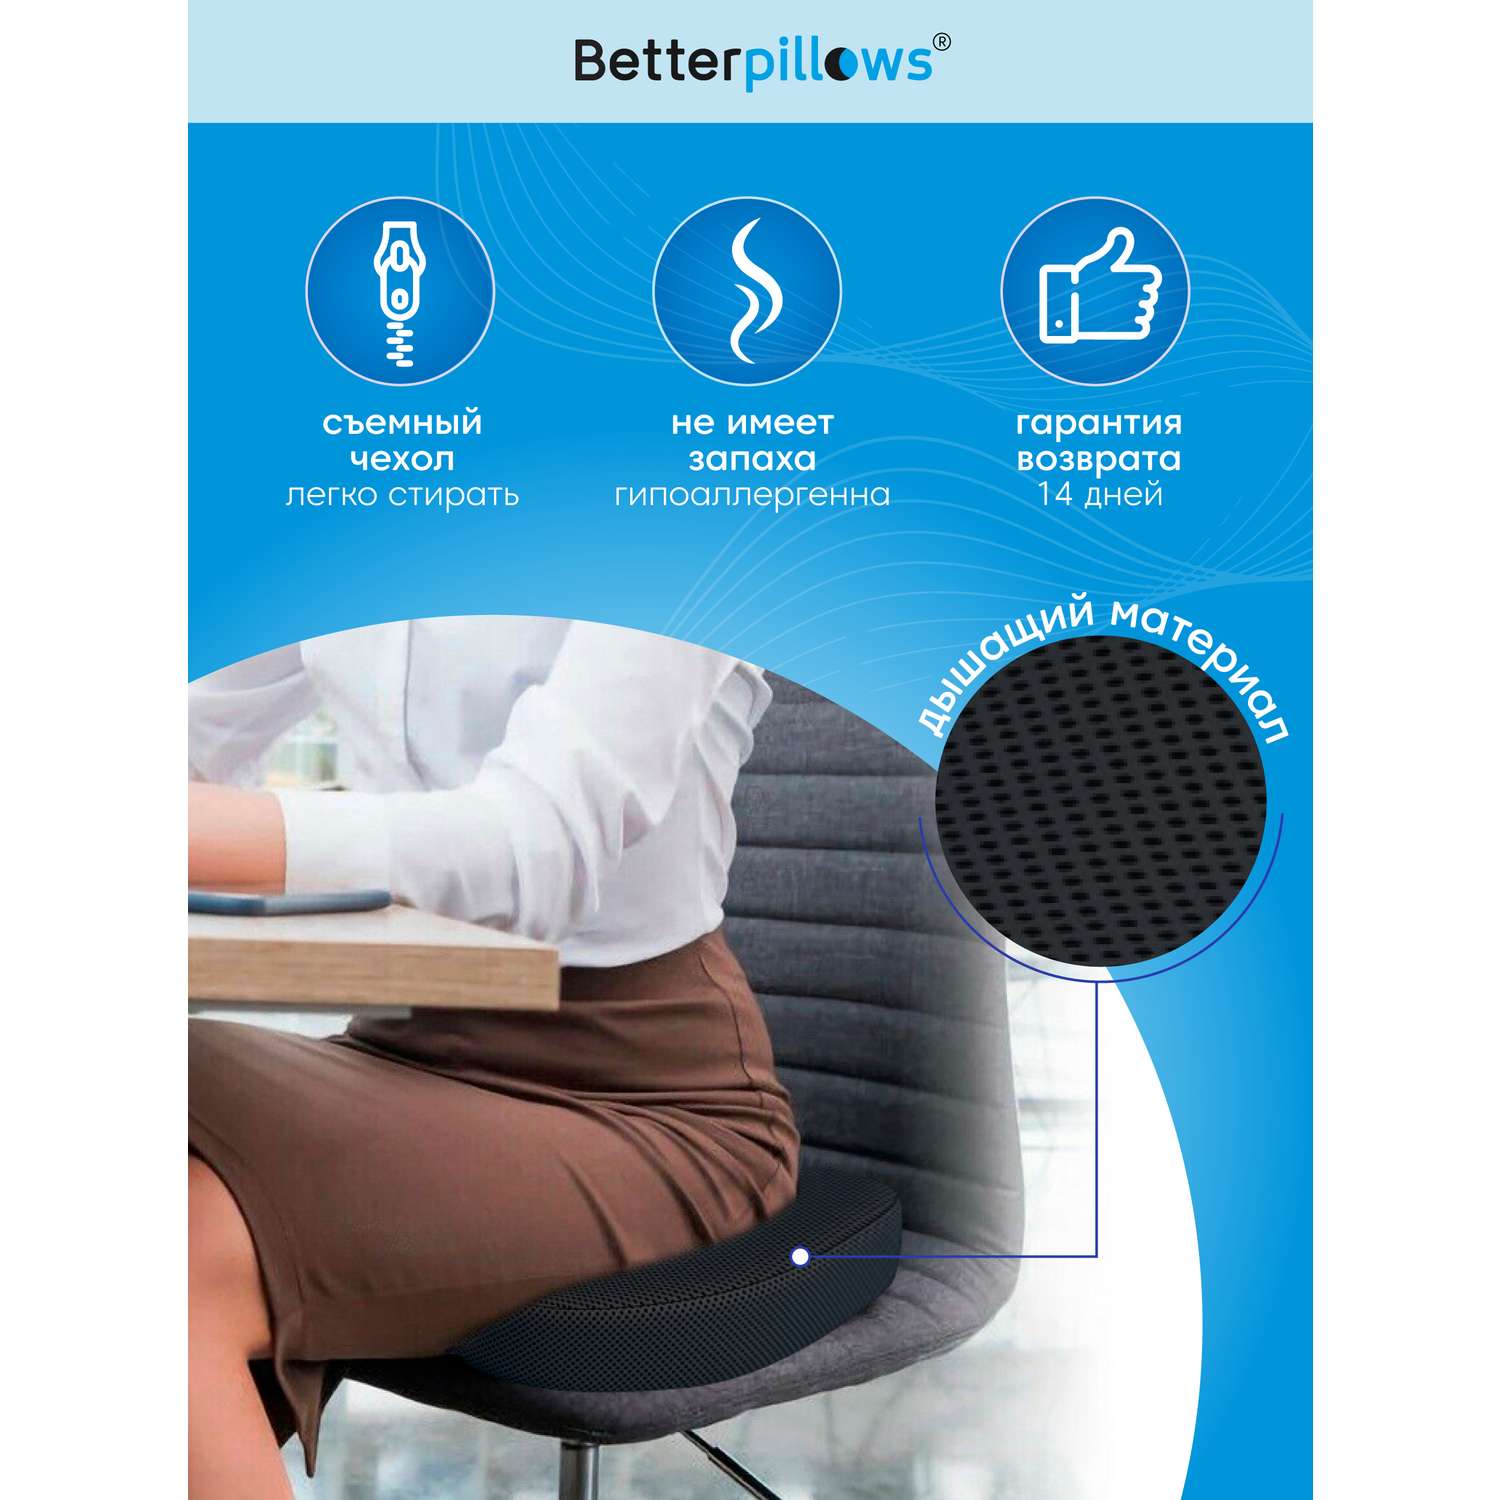 Ортопедическая подушка Betterpillows Comfort seat black - фото 3